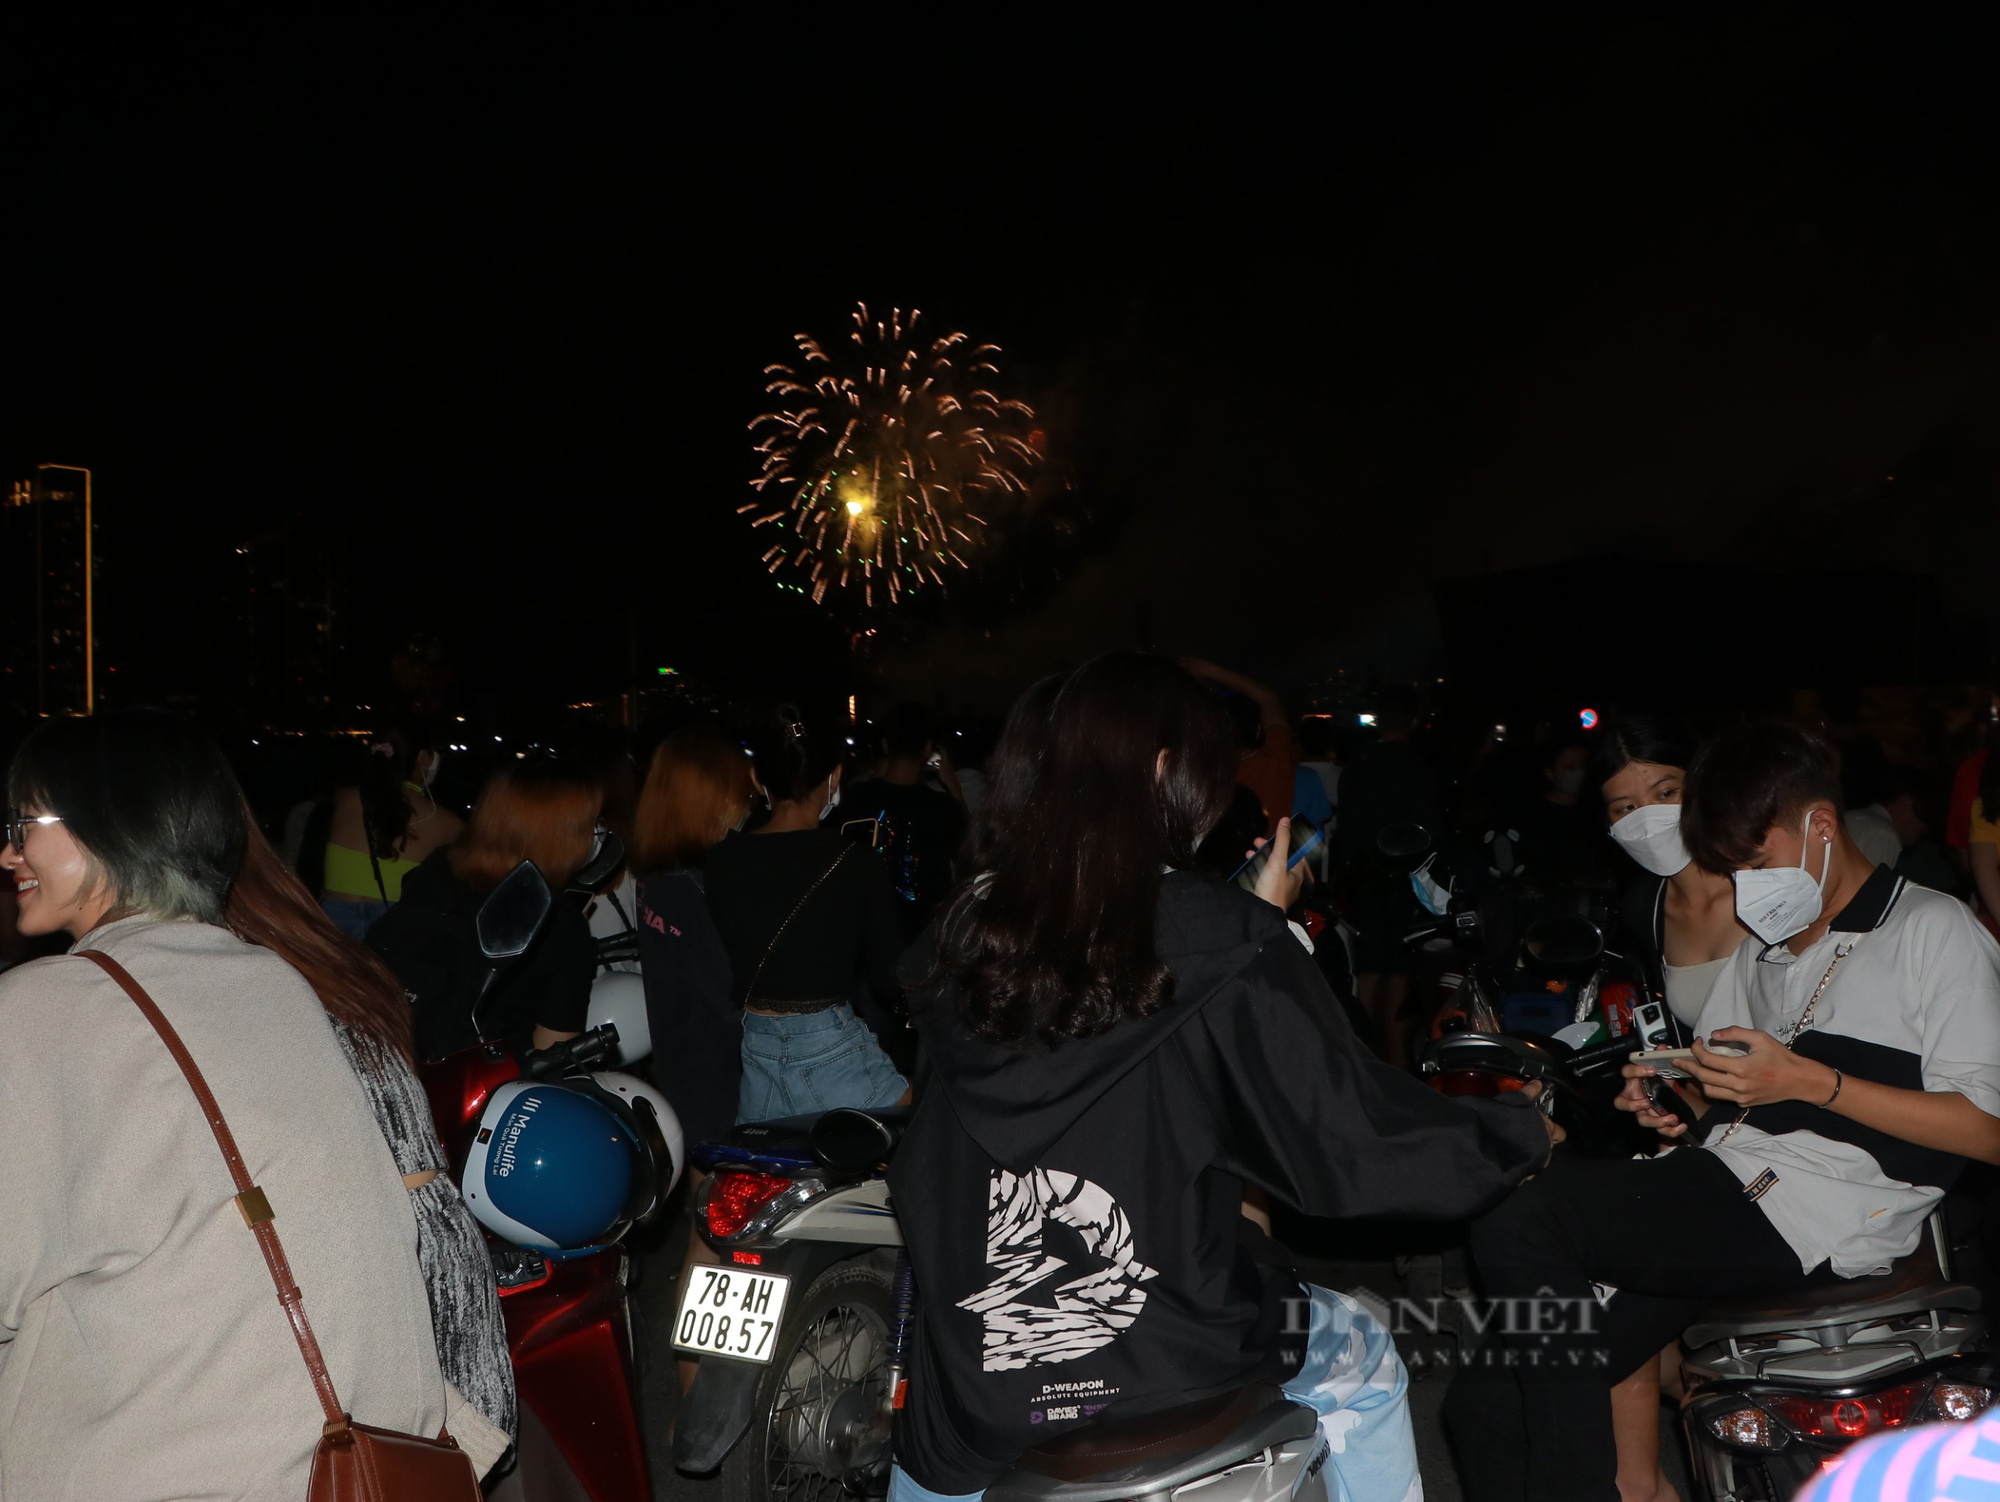 Xem bắn pháo hoa dịp lễ 30/4 ở TP.HCM: Hàng nghìn người chen chúc, chuẩn bị bìa carton để “hóng” từ sớm - Ảnh 8.